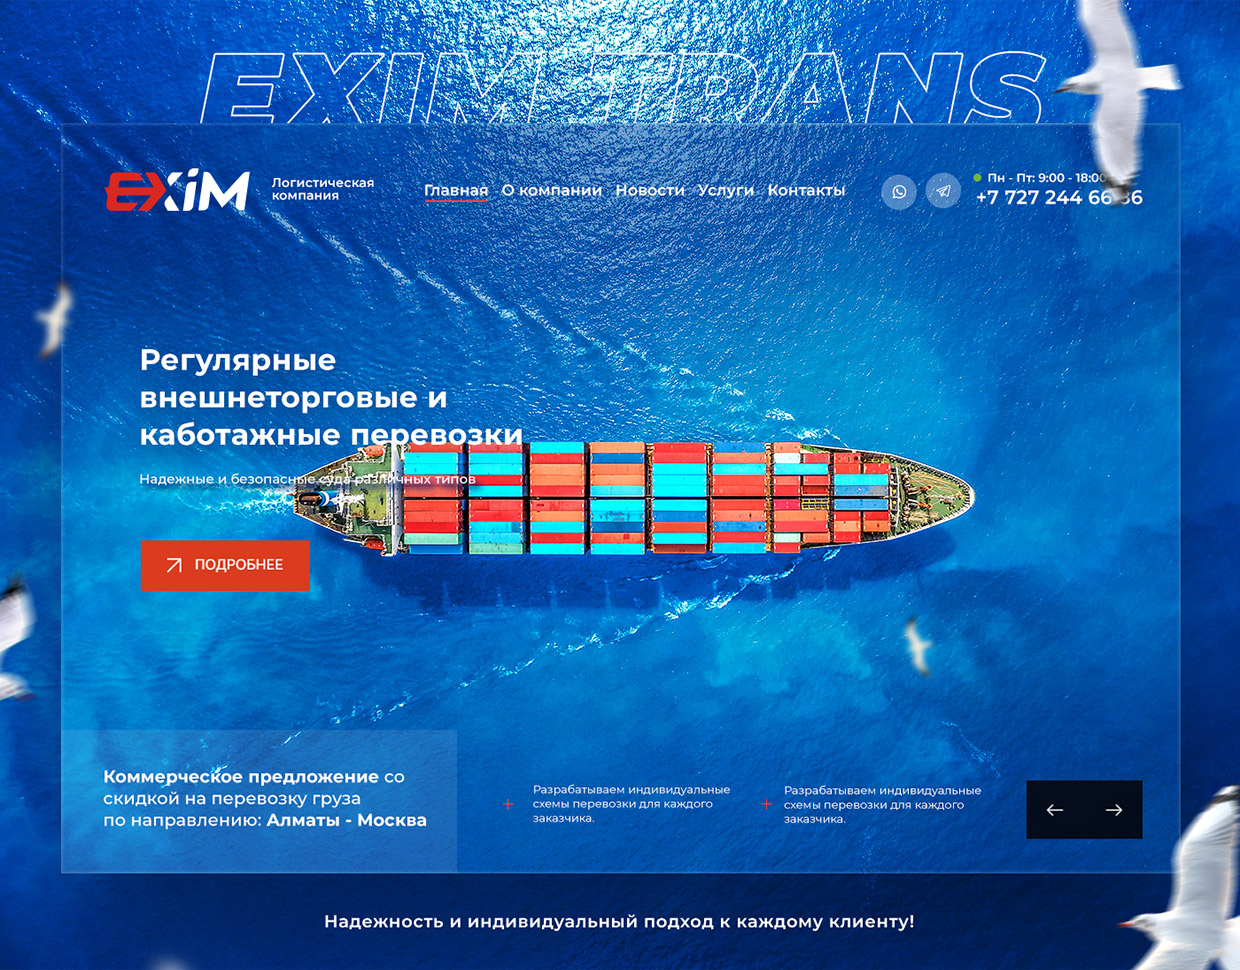 Website development for Exim Trans logistics company